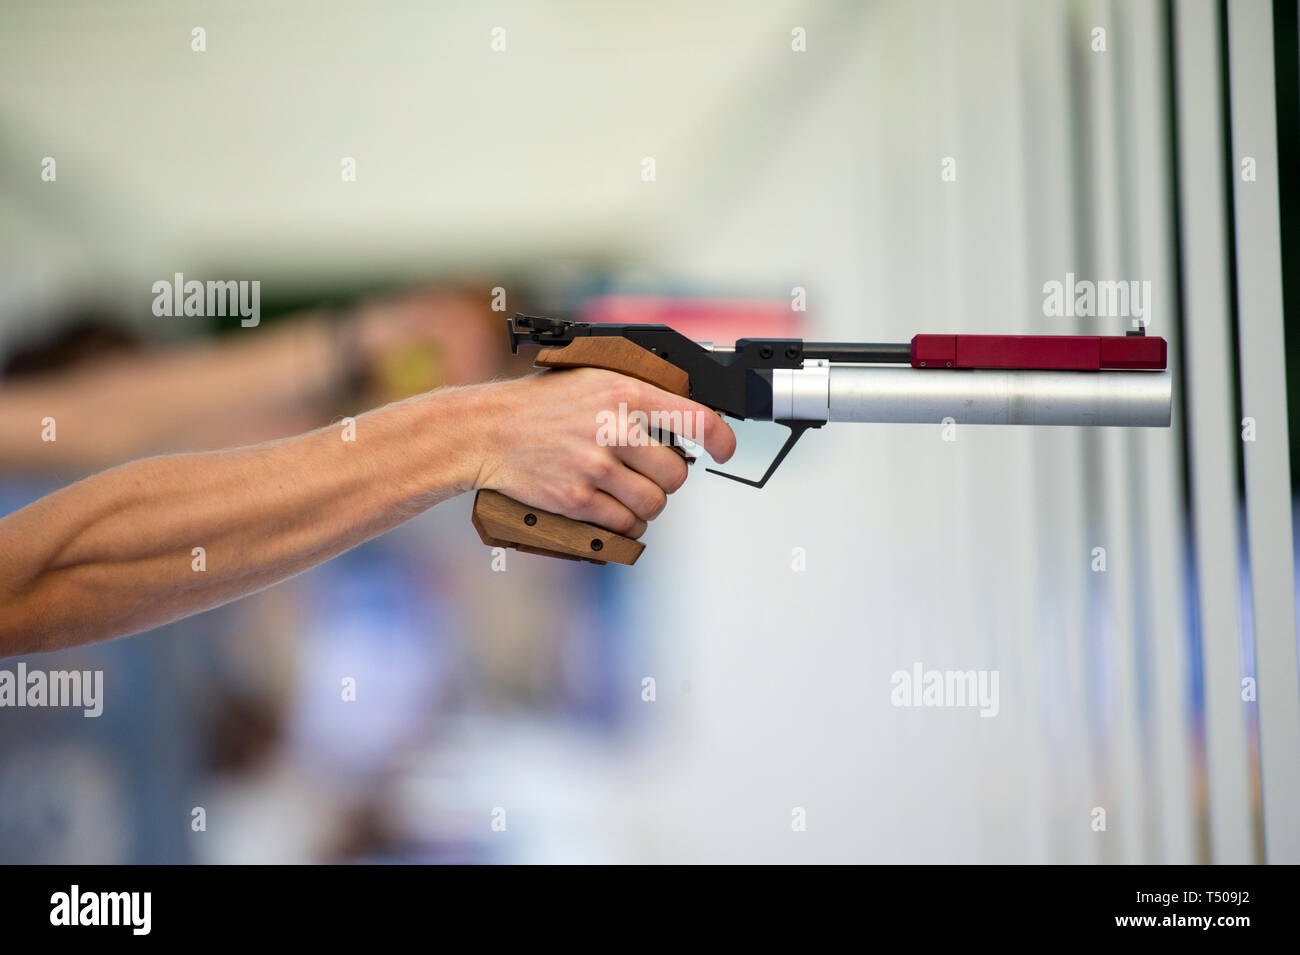 Un homme est le tir d'un pistolet laser sports Photo Stock - Alamy